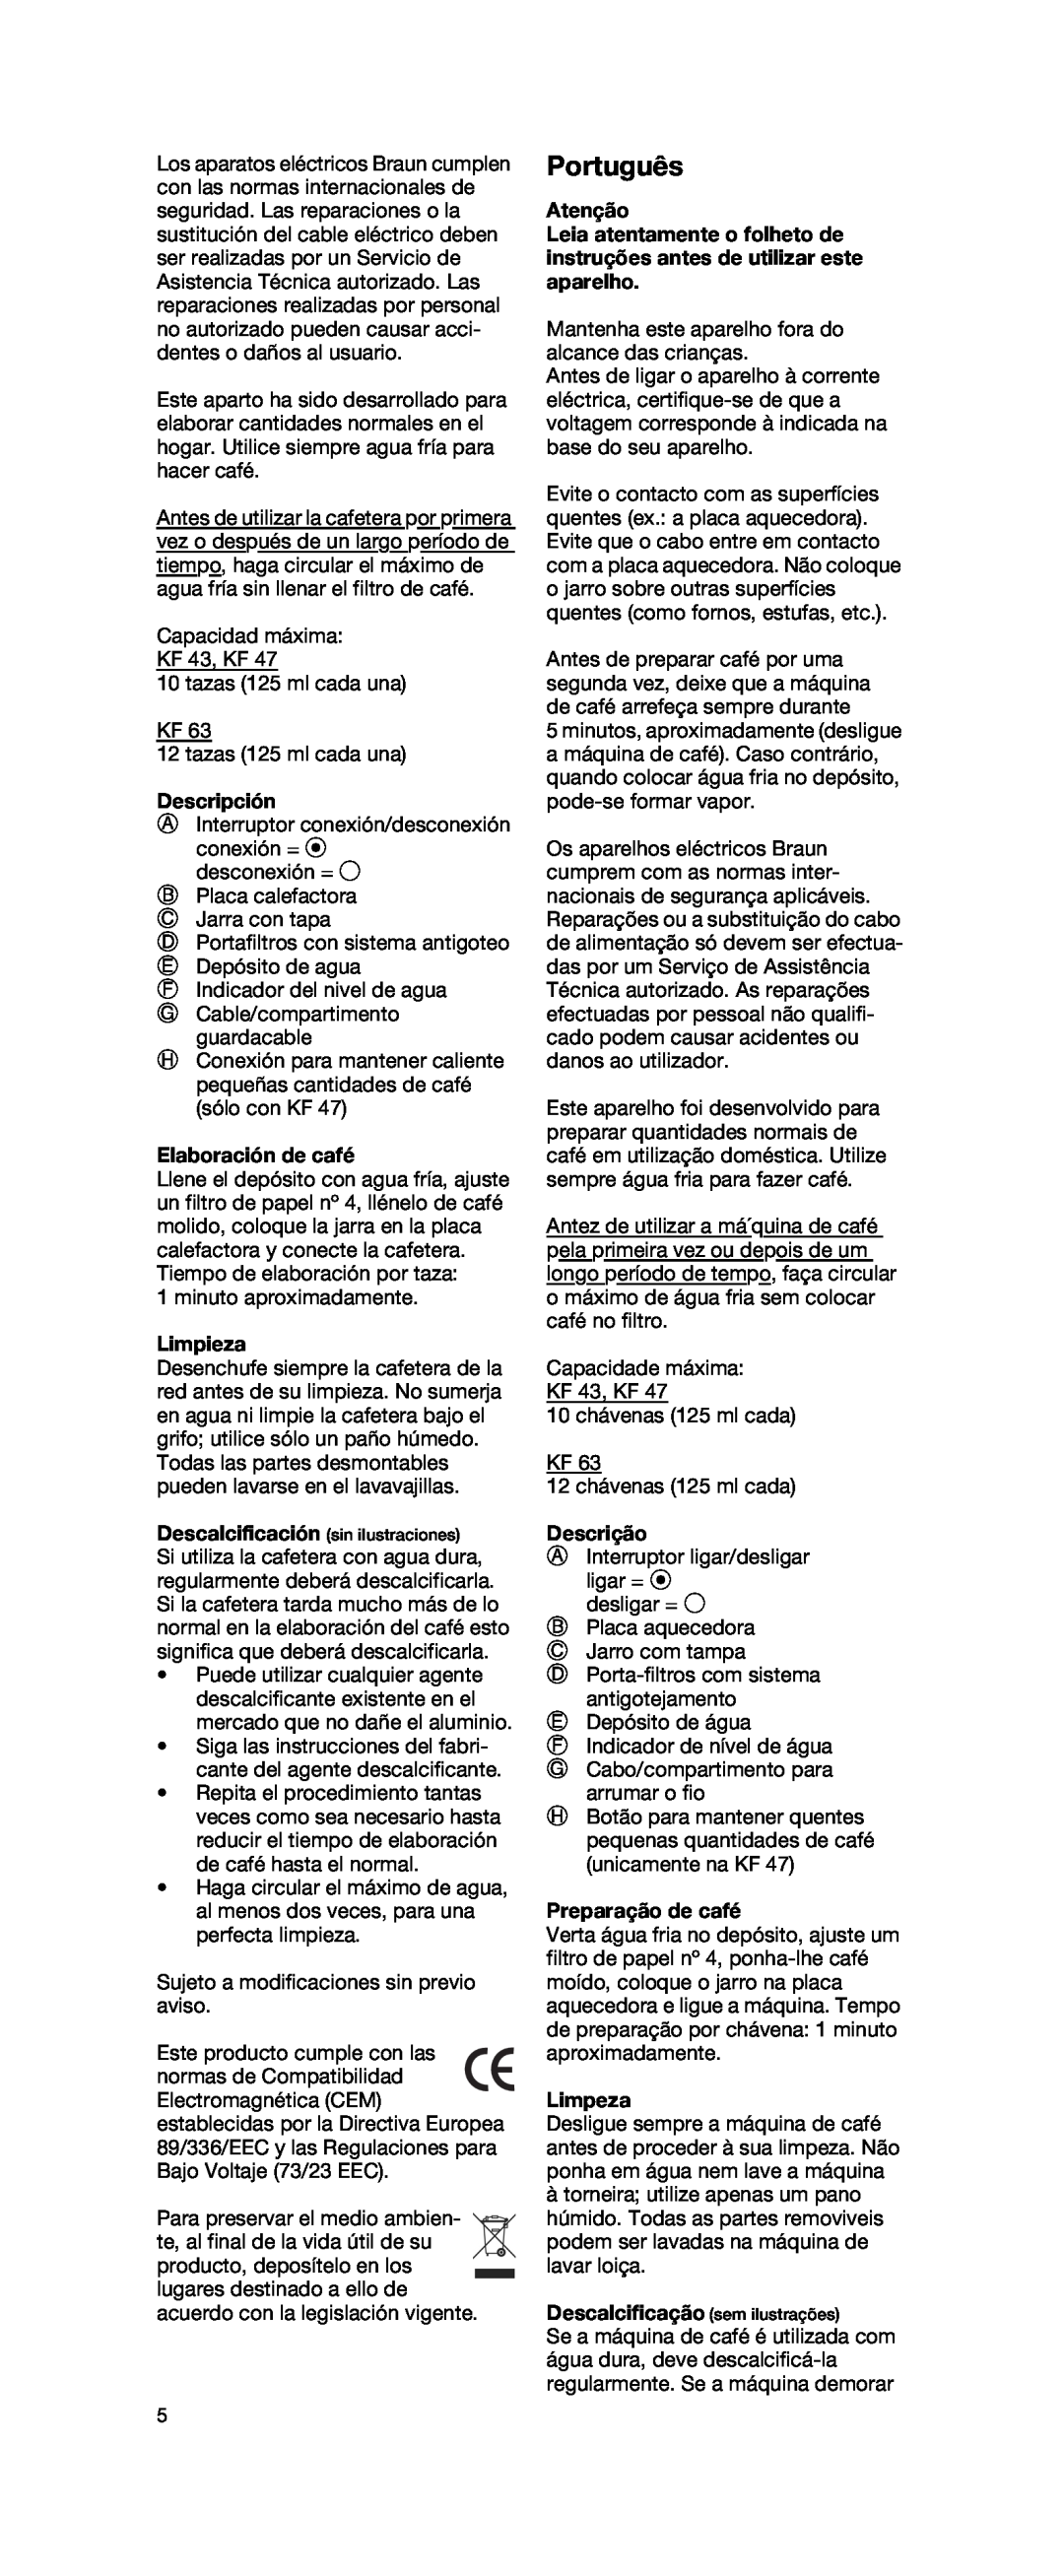 Braun KF 43 TYPE 4087 manual Português, Descripción, Elaboración de café, Limpieza, Atenção, Descrição, Preparação de café 